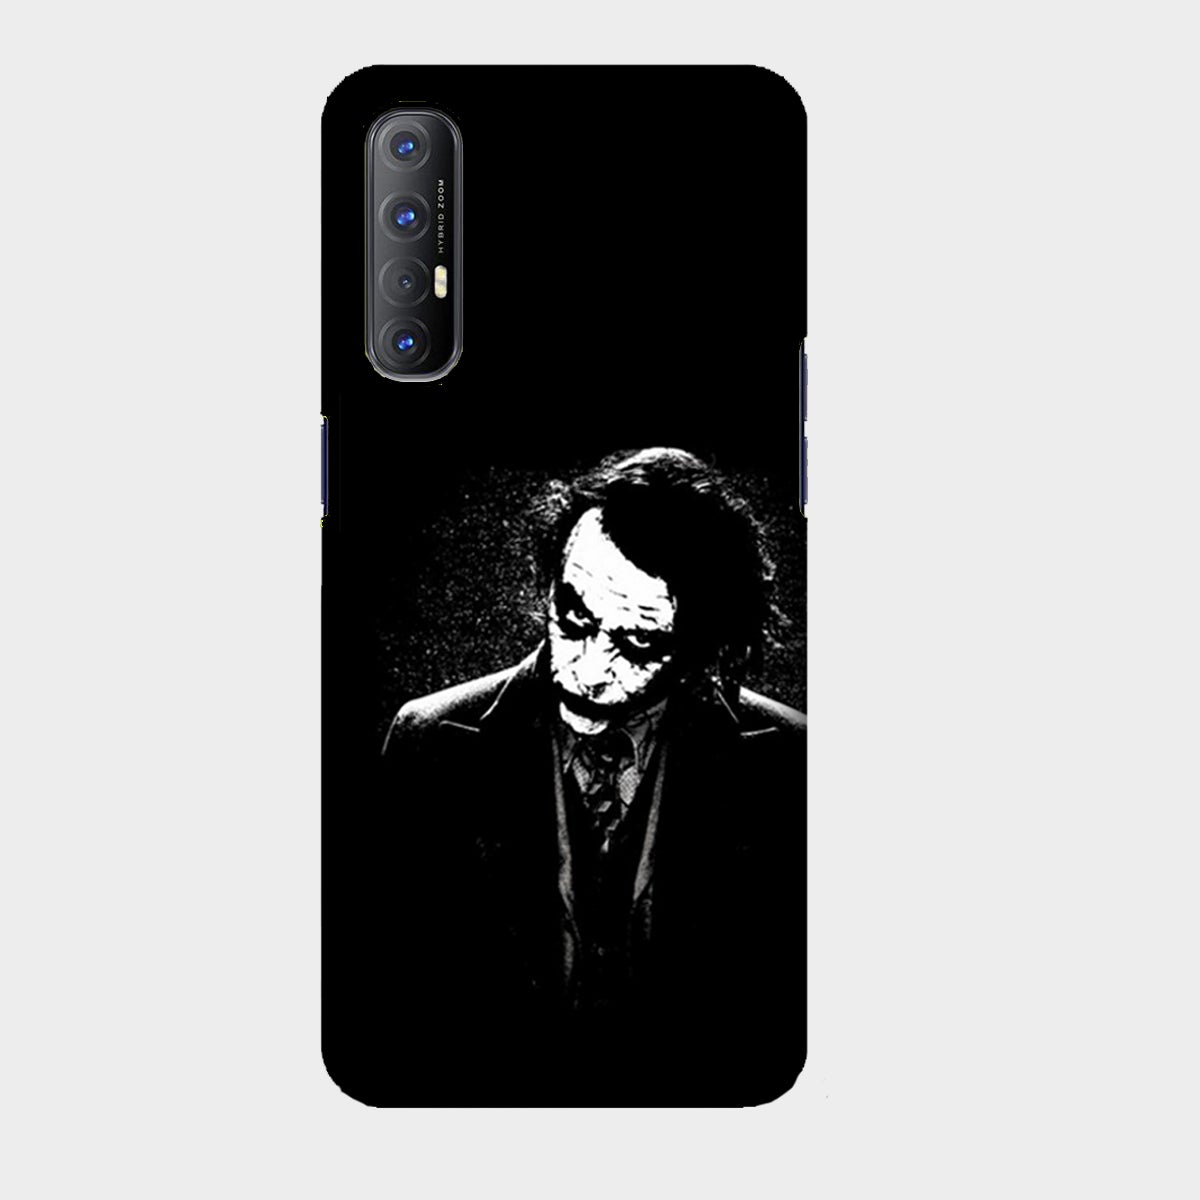 The Joker - Black & White - Mobile Phone Cover - Hard Case